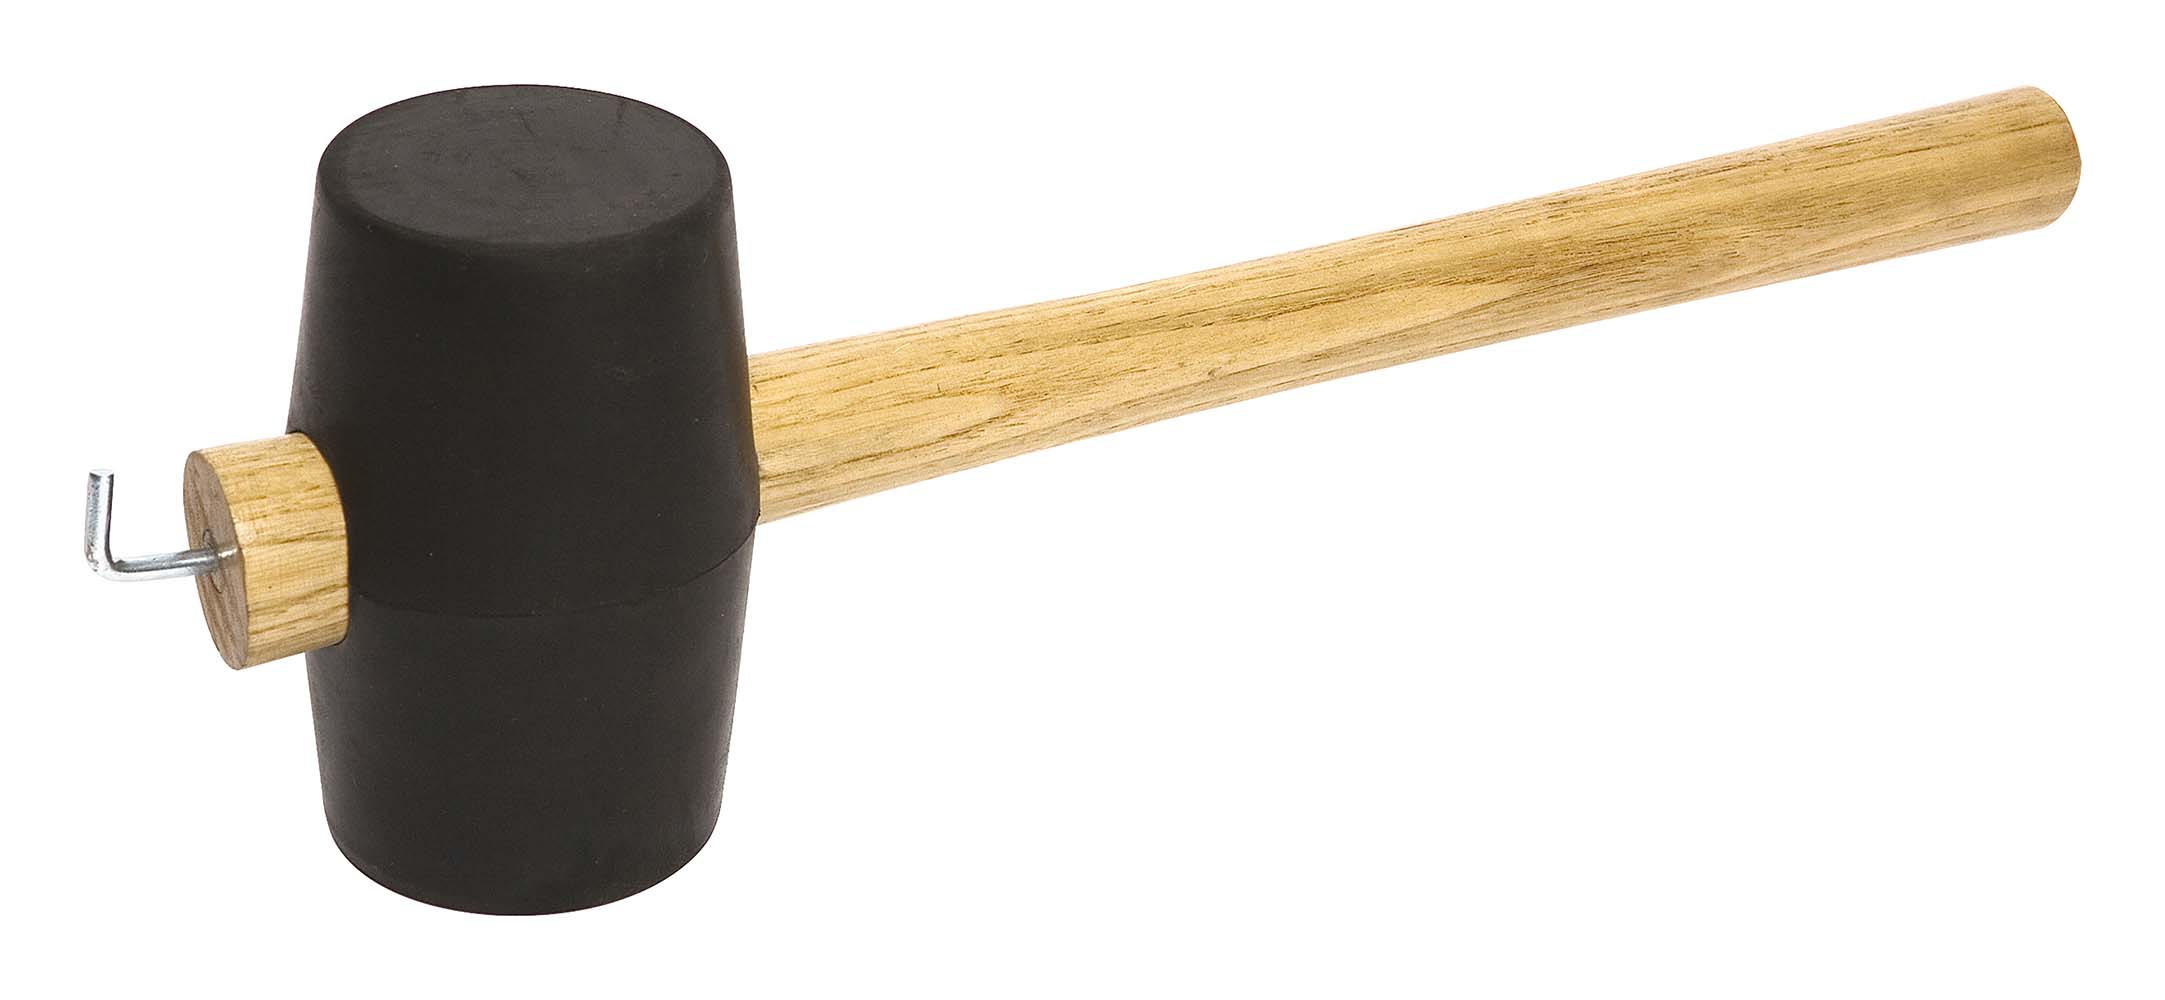 4114776 Een stevige rubber hamer. Voorzien van een houten steel, met op het uiteinde een sterke haringtrekker.